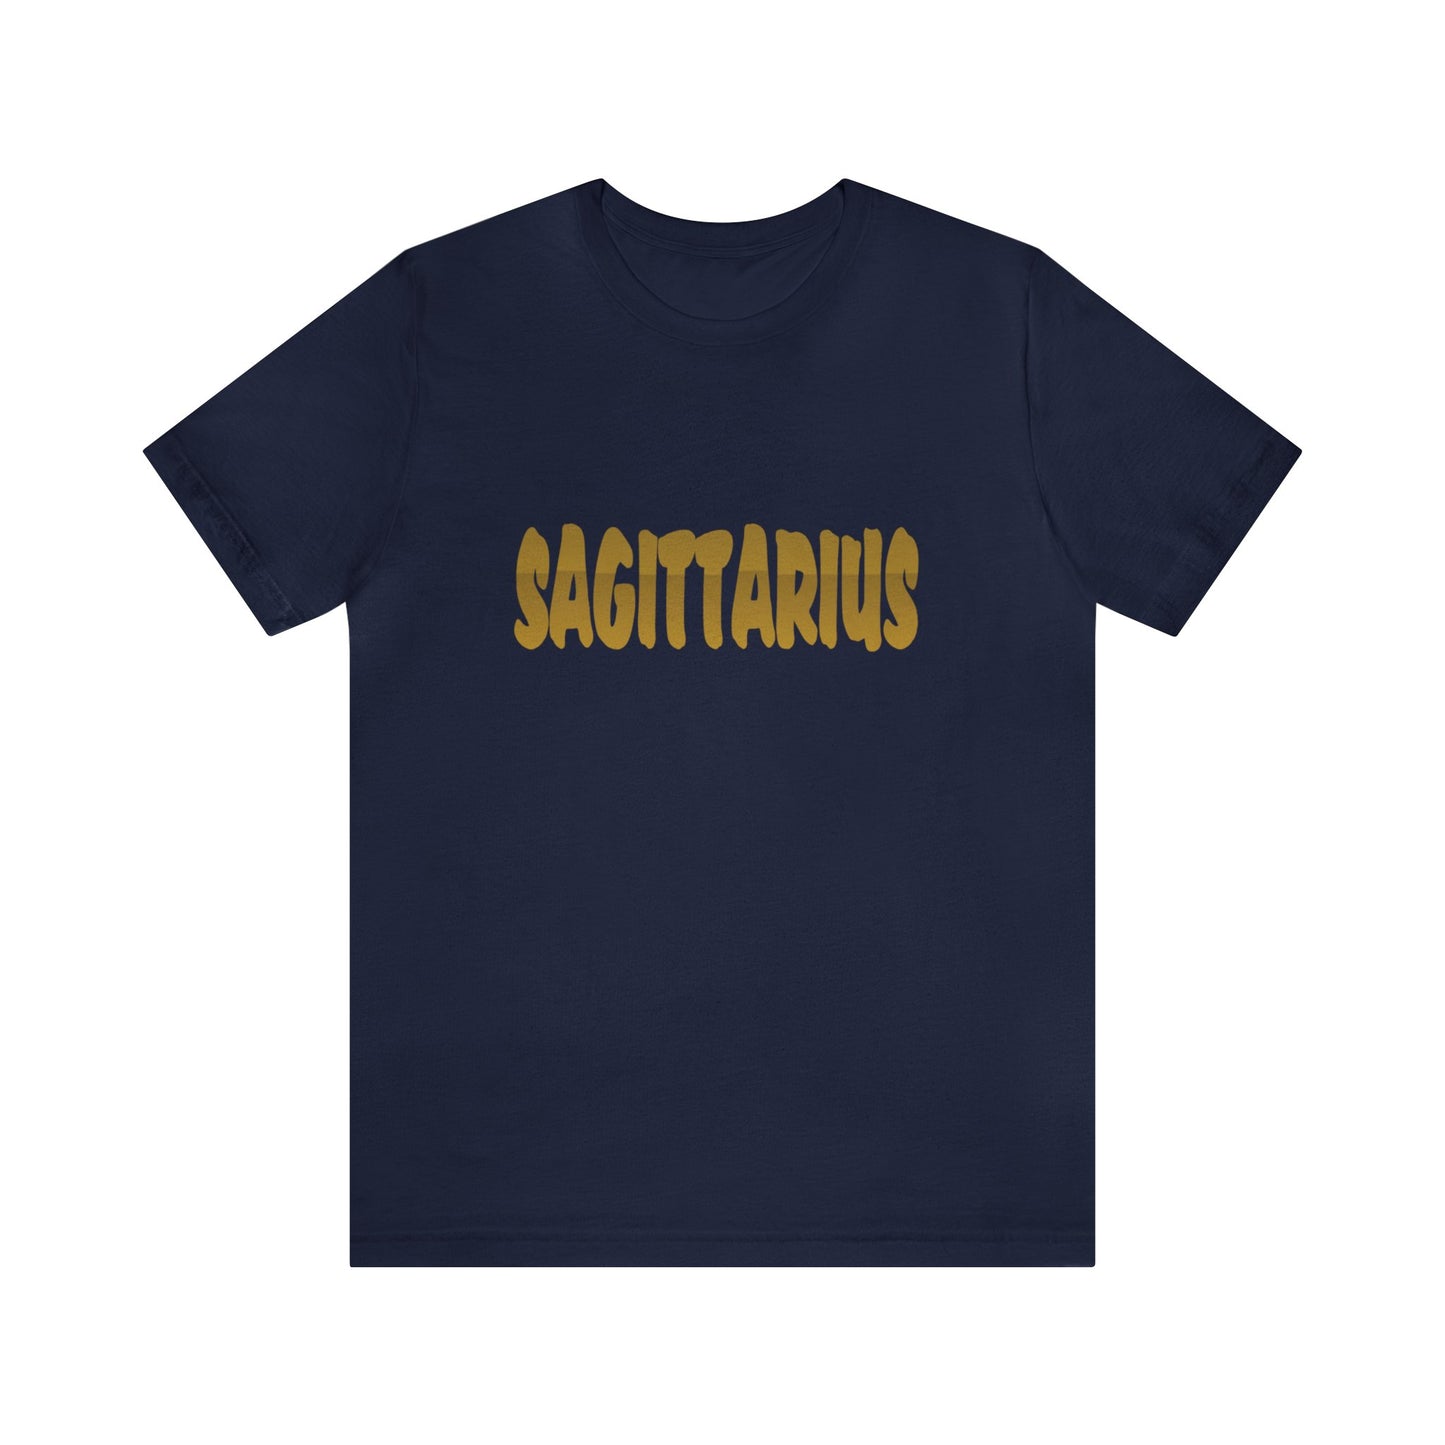 Sagittarius Tee